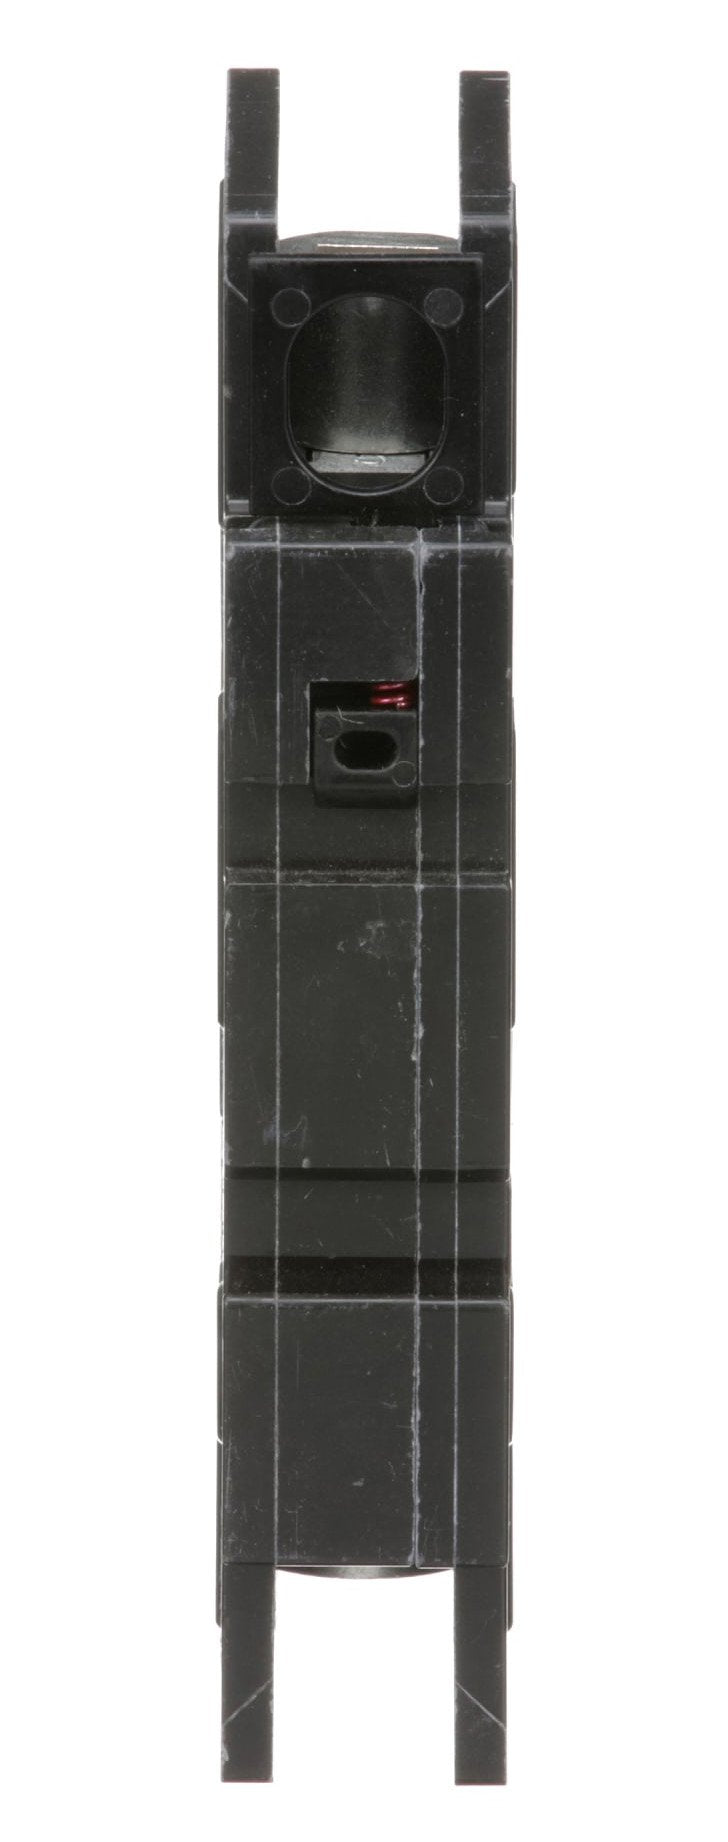 QOU145 - Square D - 45 Amp Circuit Breaker